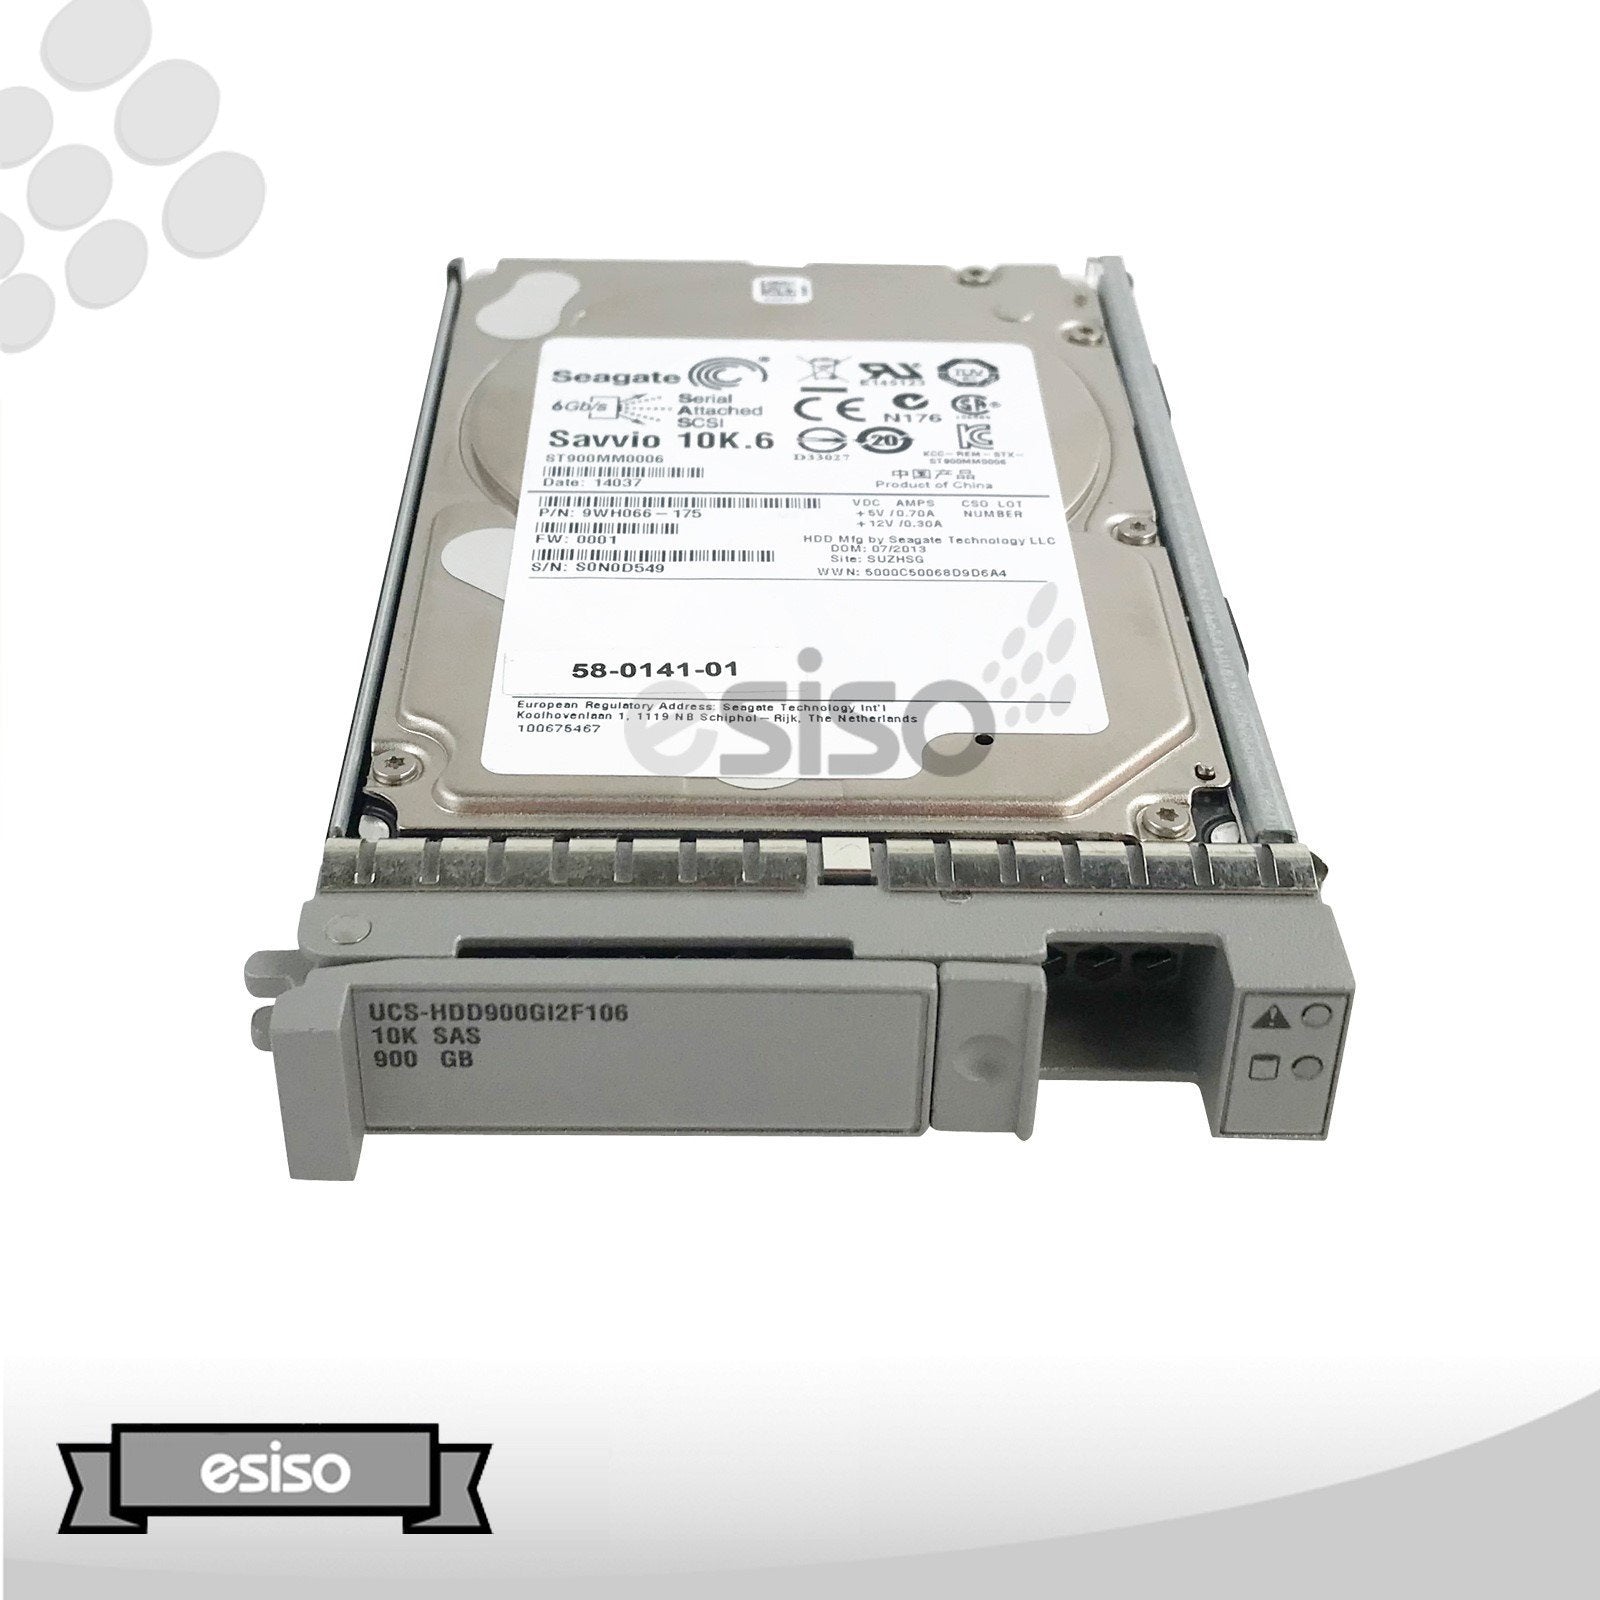 UCS-HDD900GI2F106 58-0141-01 ST900MM0006 CISCO 900GB 10K 6G 2.5" SAS HARD DRIVE